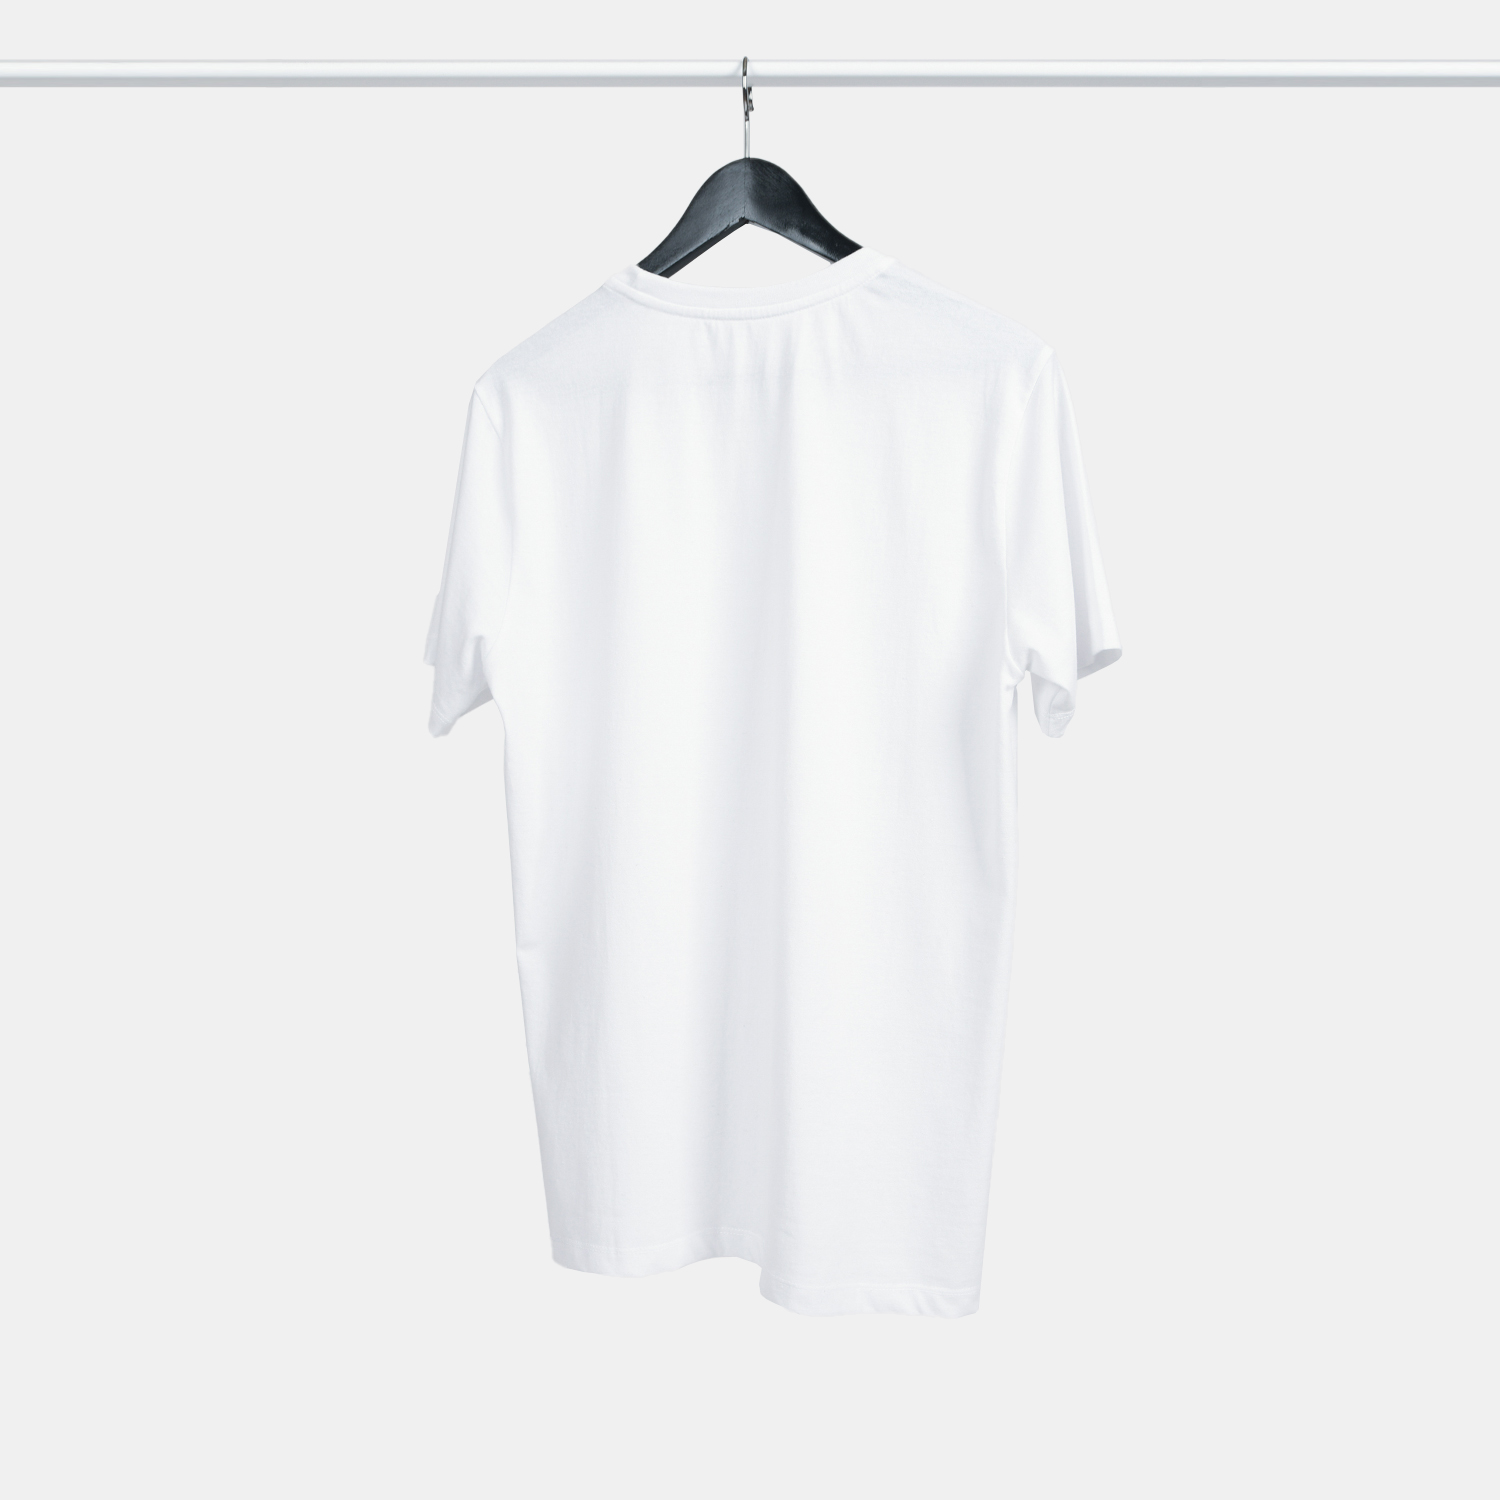 Genanvendt T-shirt i hvid til mænd, bagfra, fra A-PIONEER